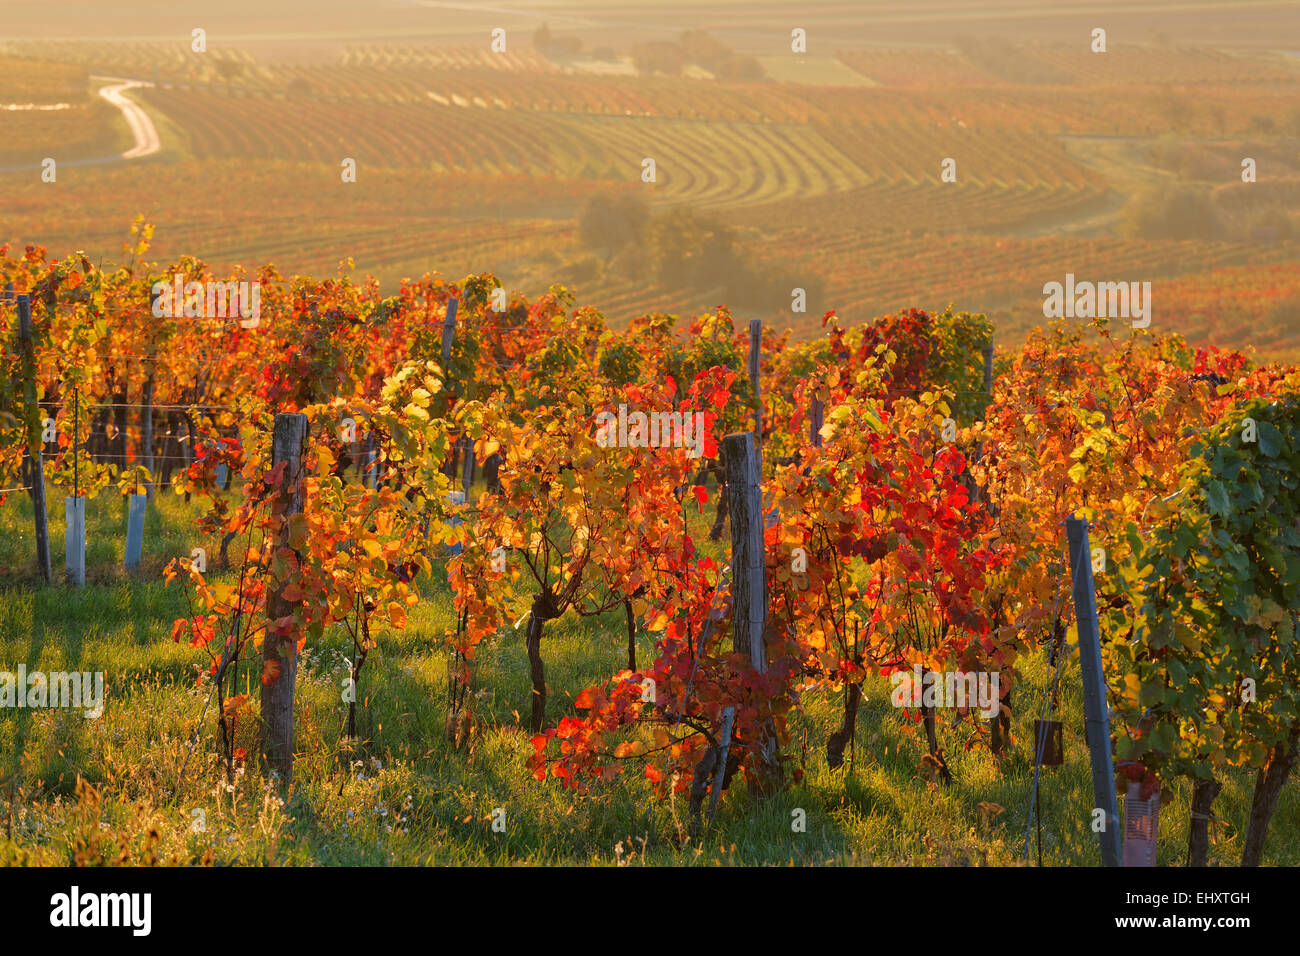 Austria, Burgenland, Oberpullendorf District, Blaufraenkischland, Neckenmarkt, vineyards in autumn Stock Photo